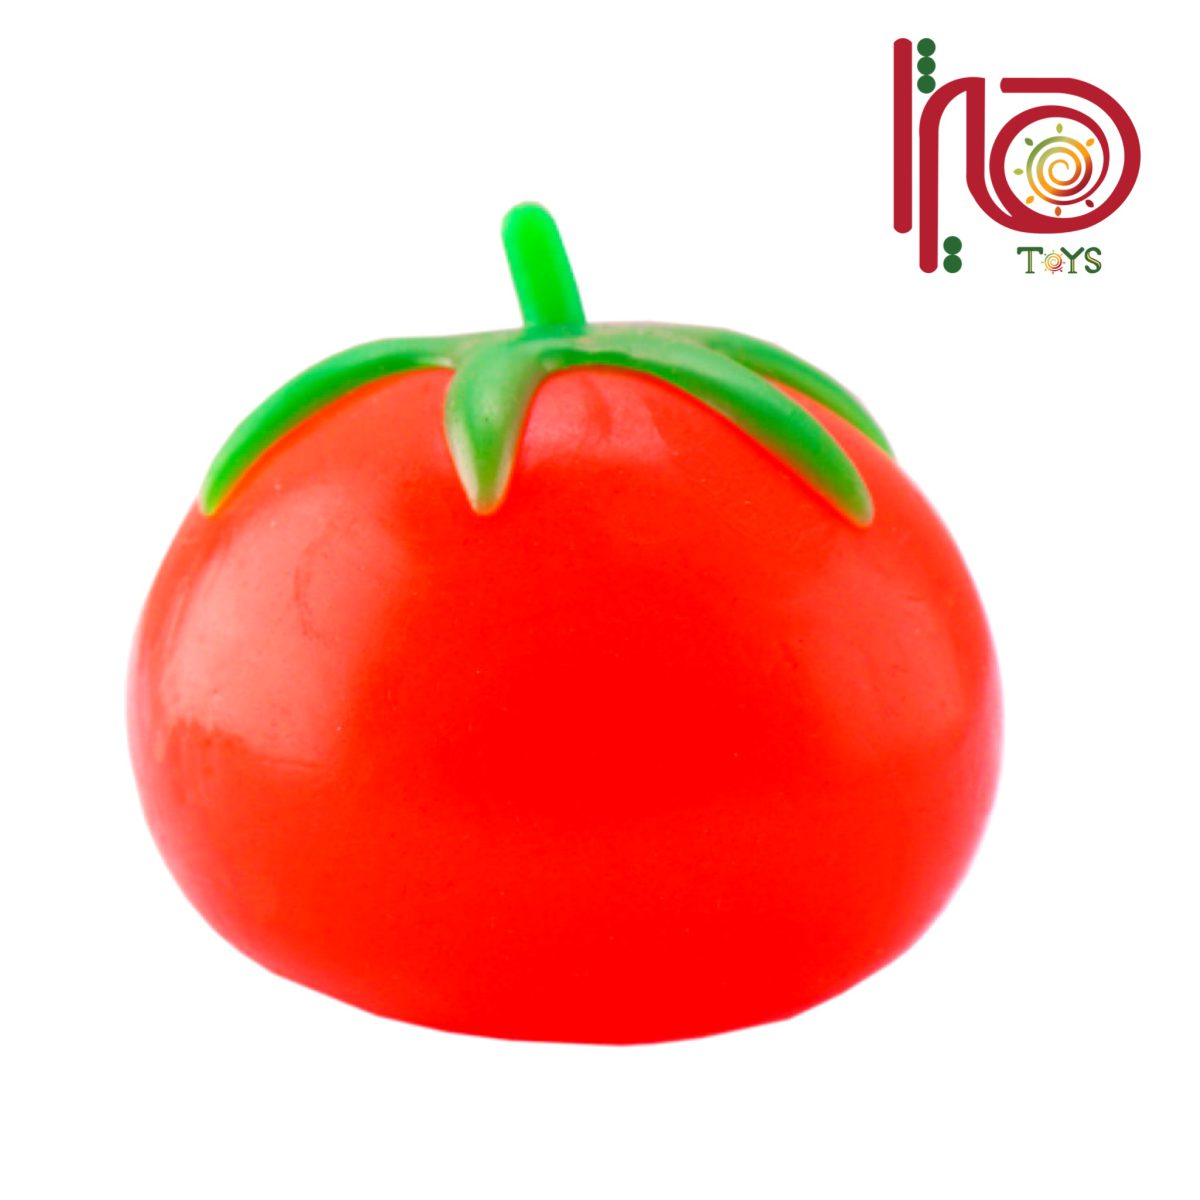 فیجت ضد استرس مدل له شو گوجه فرنگی رنگ قرمز هیژا تویز